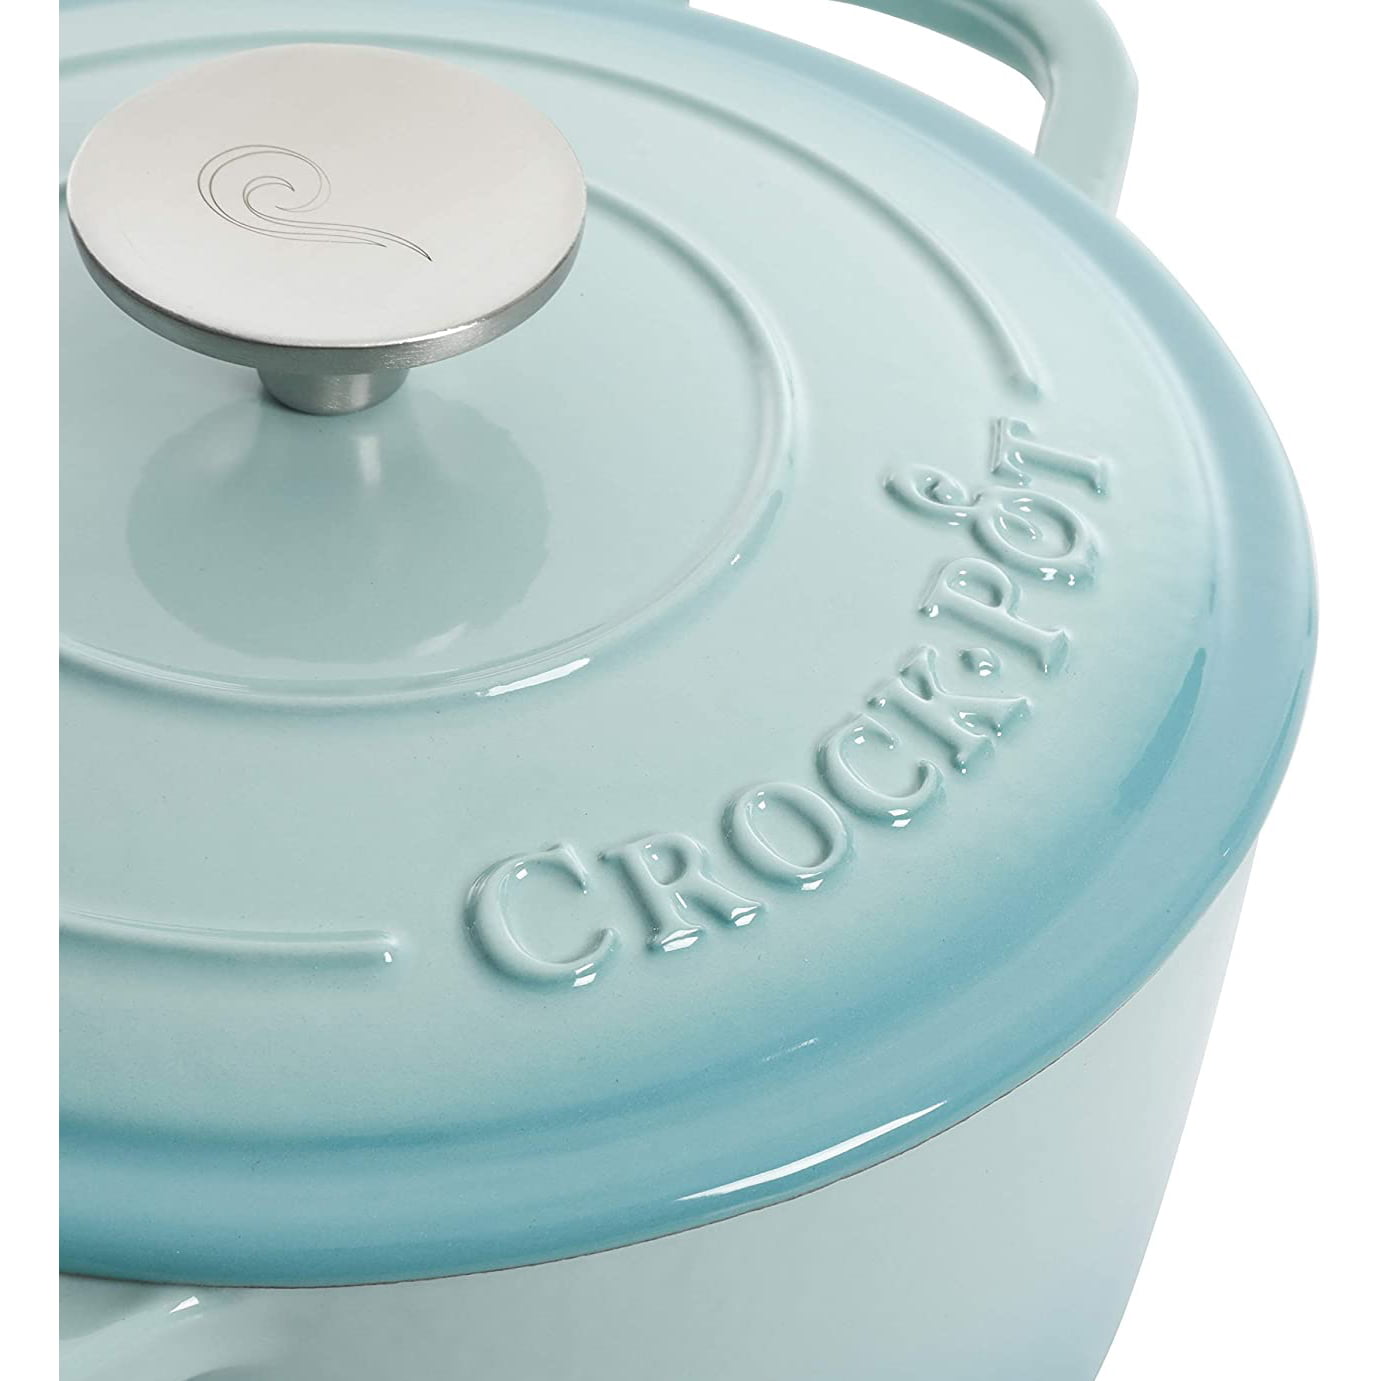 Crock-Pot 7 Quart Round Enamel Cast Iron Covered Dutch Oven Slow Cooker,  Blue, 1 Piece - Kroger